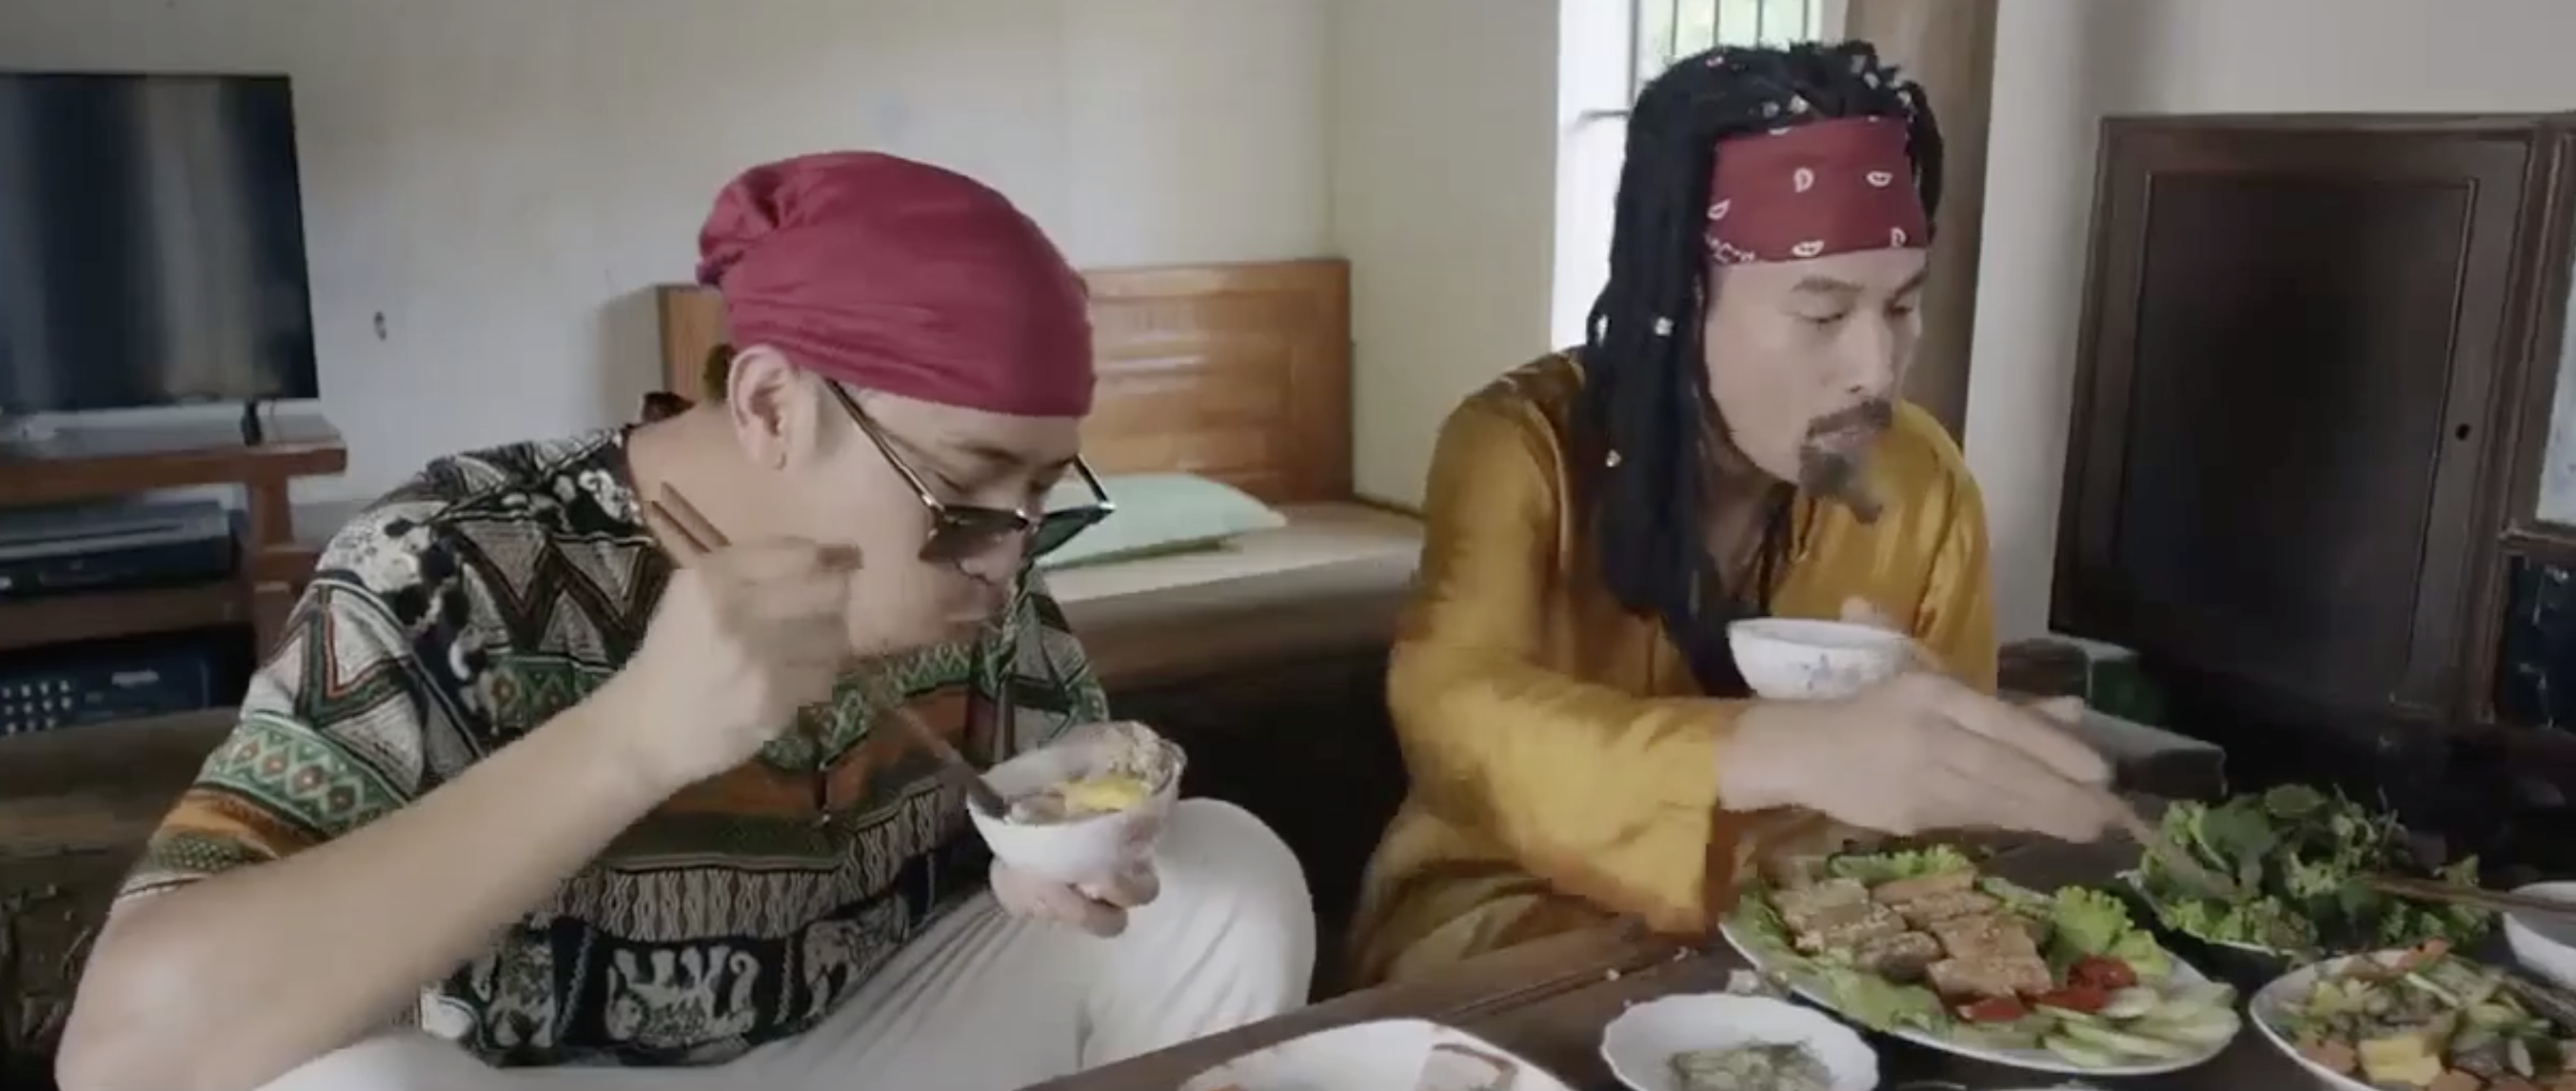 Tạo hình của Nô và Mộc khi đến ăn cơm nhà Hoa. Ảnh: CMH